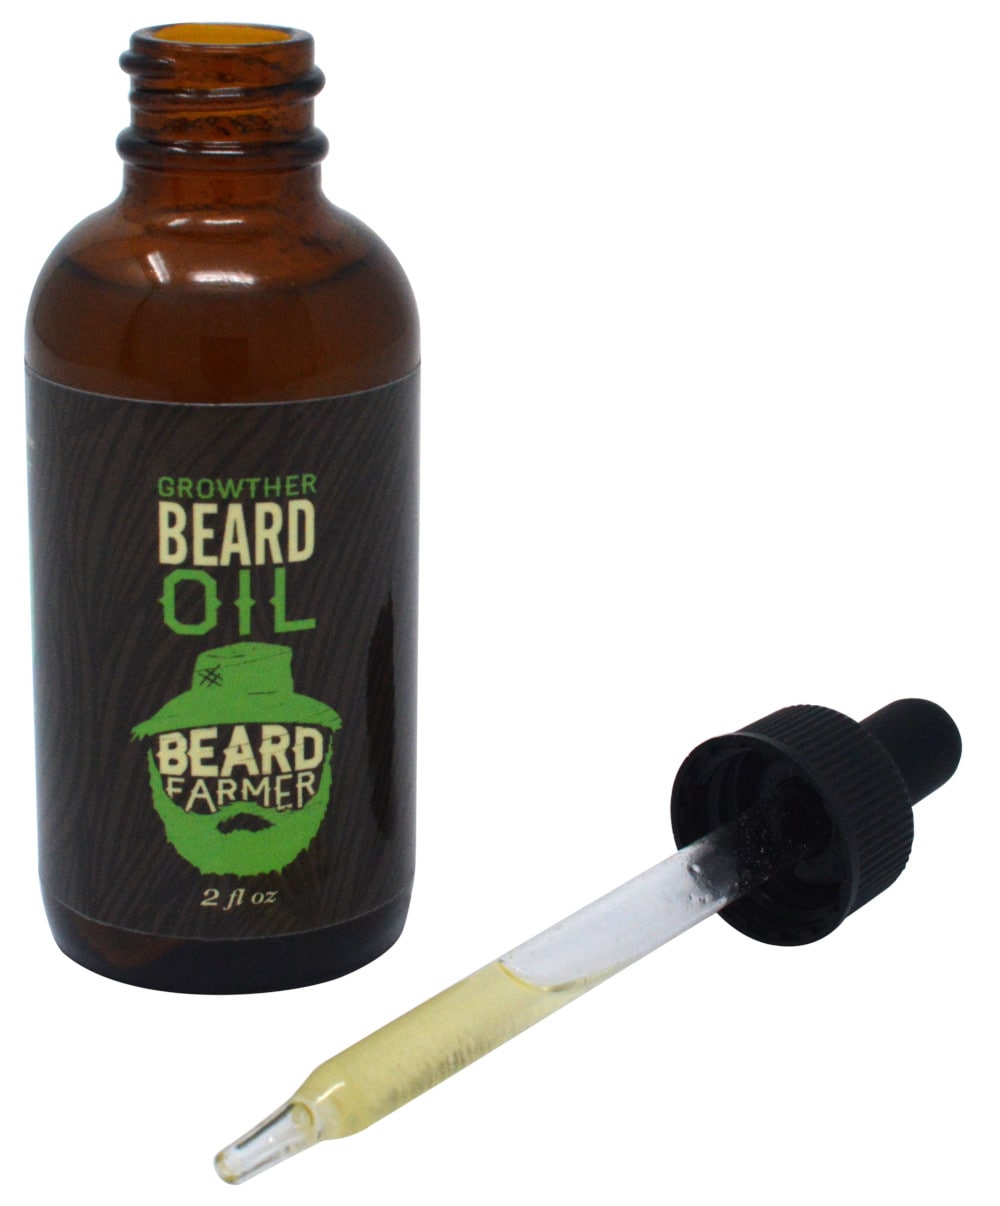 Beard Oil Bottle with oil in glass dropper